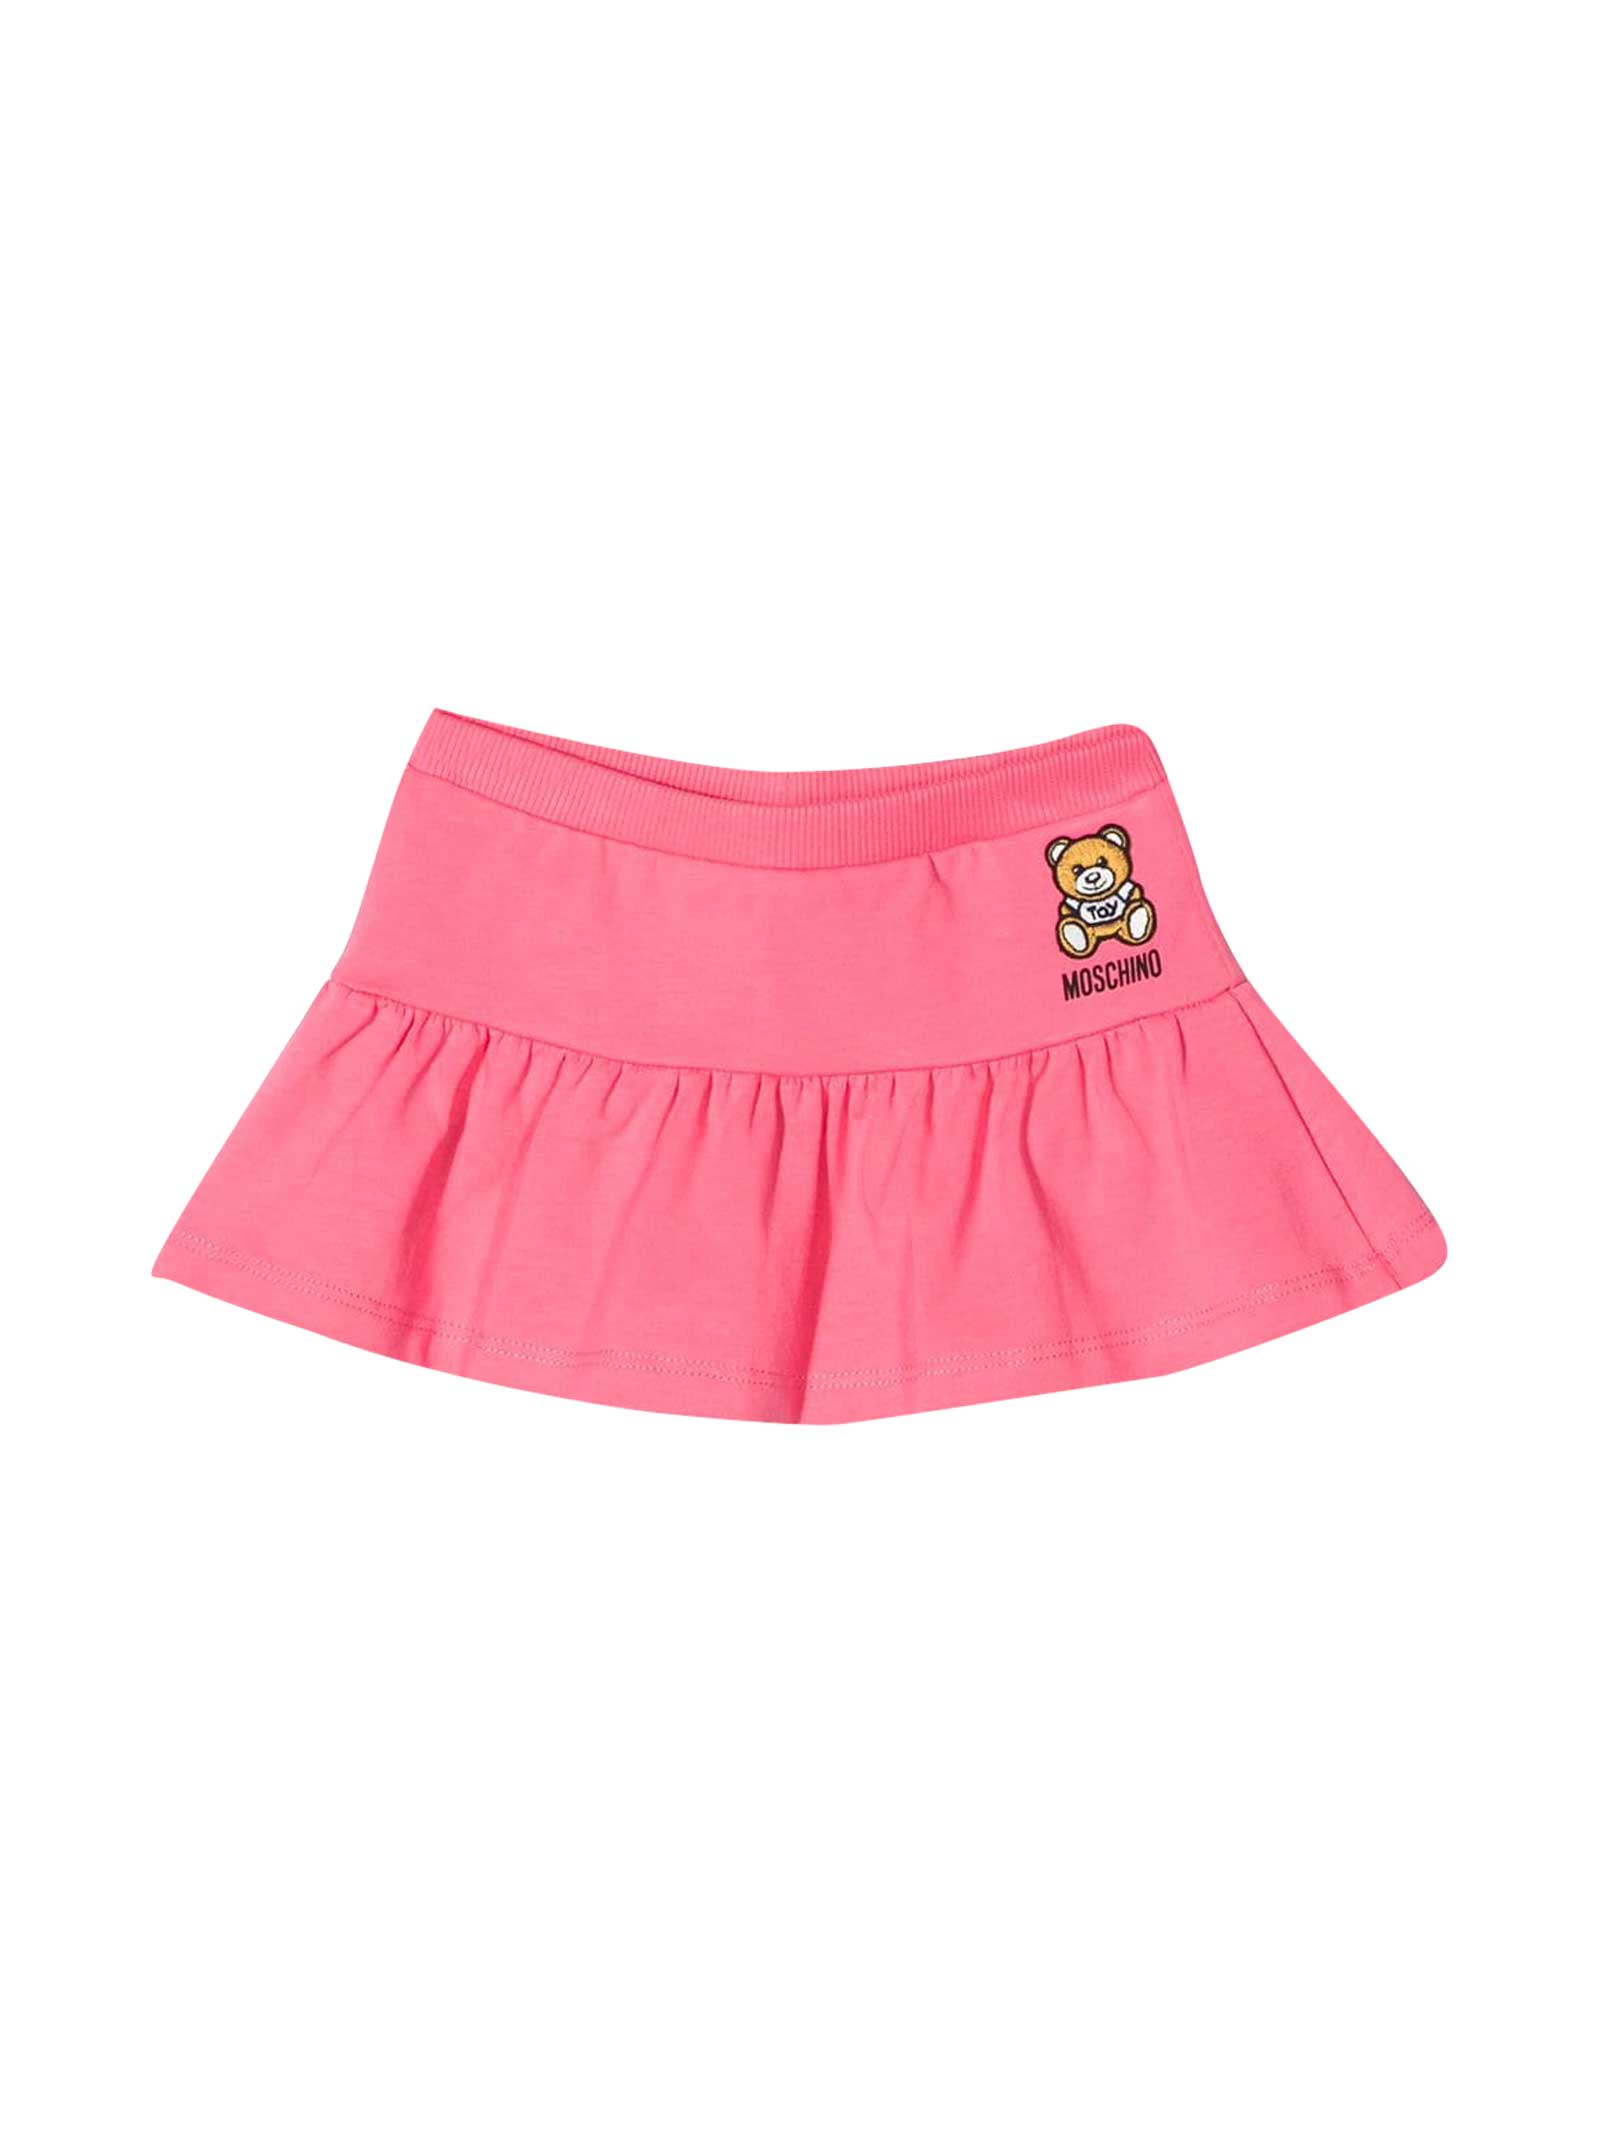 Moschino Pink Skirt